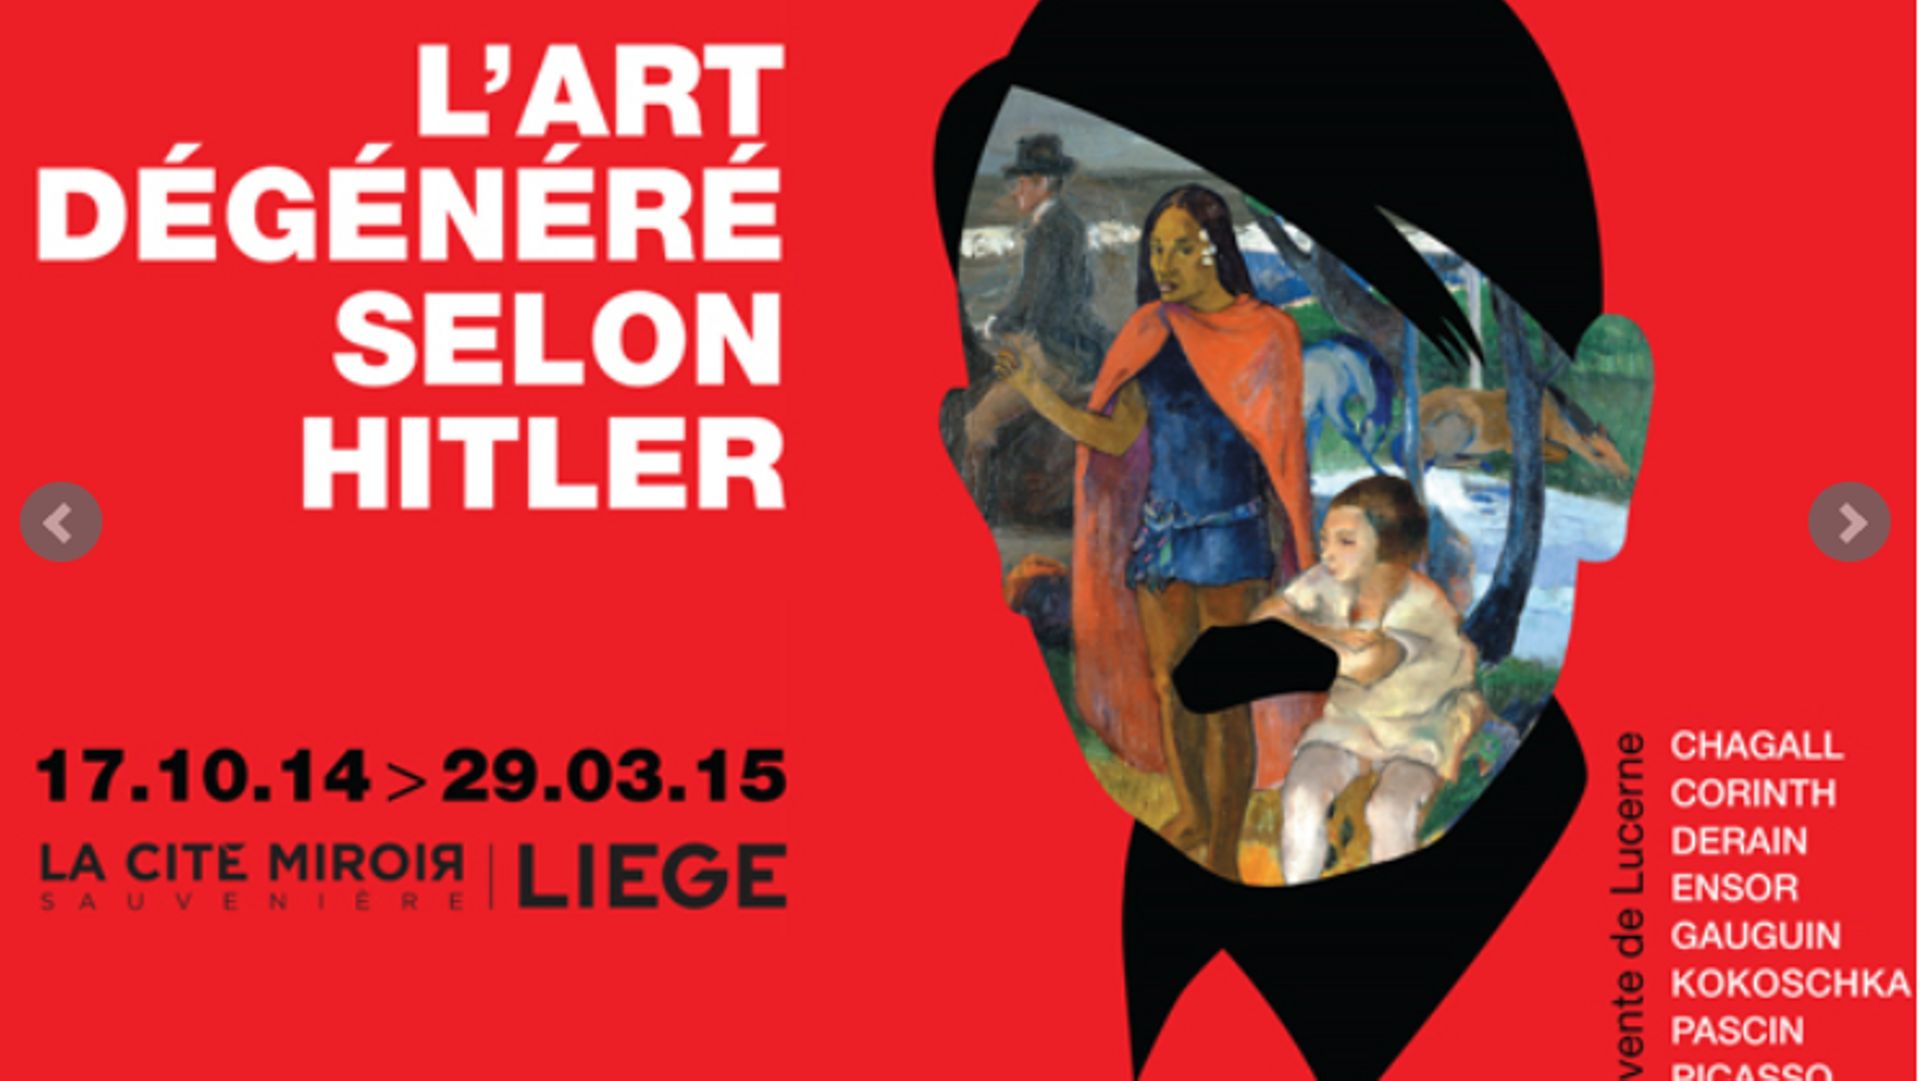 Une exposition inédite sur l'art dégénéré selon les nazis organisée à Liège